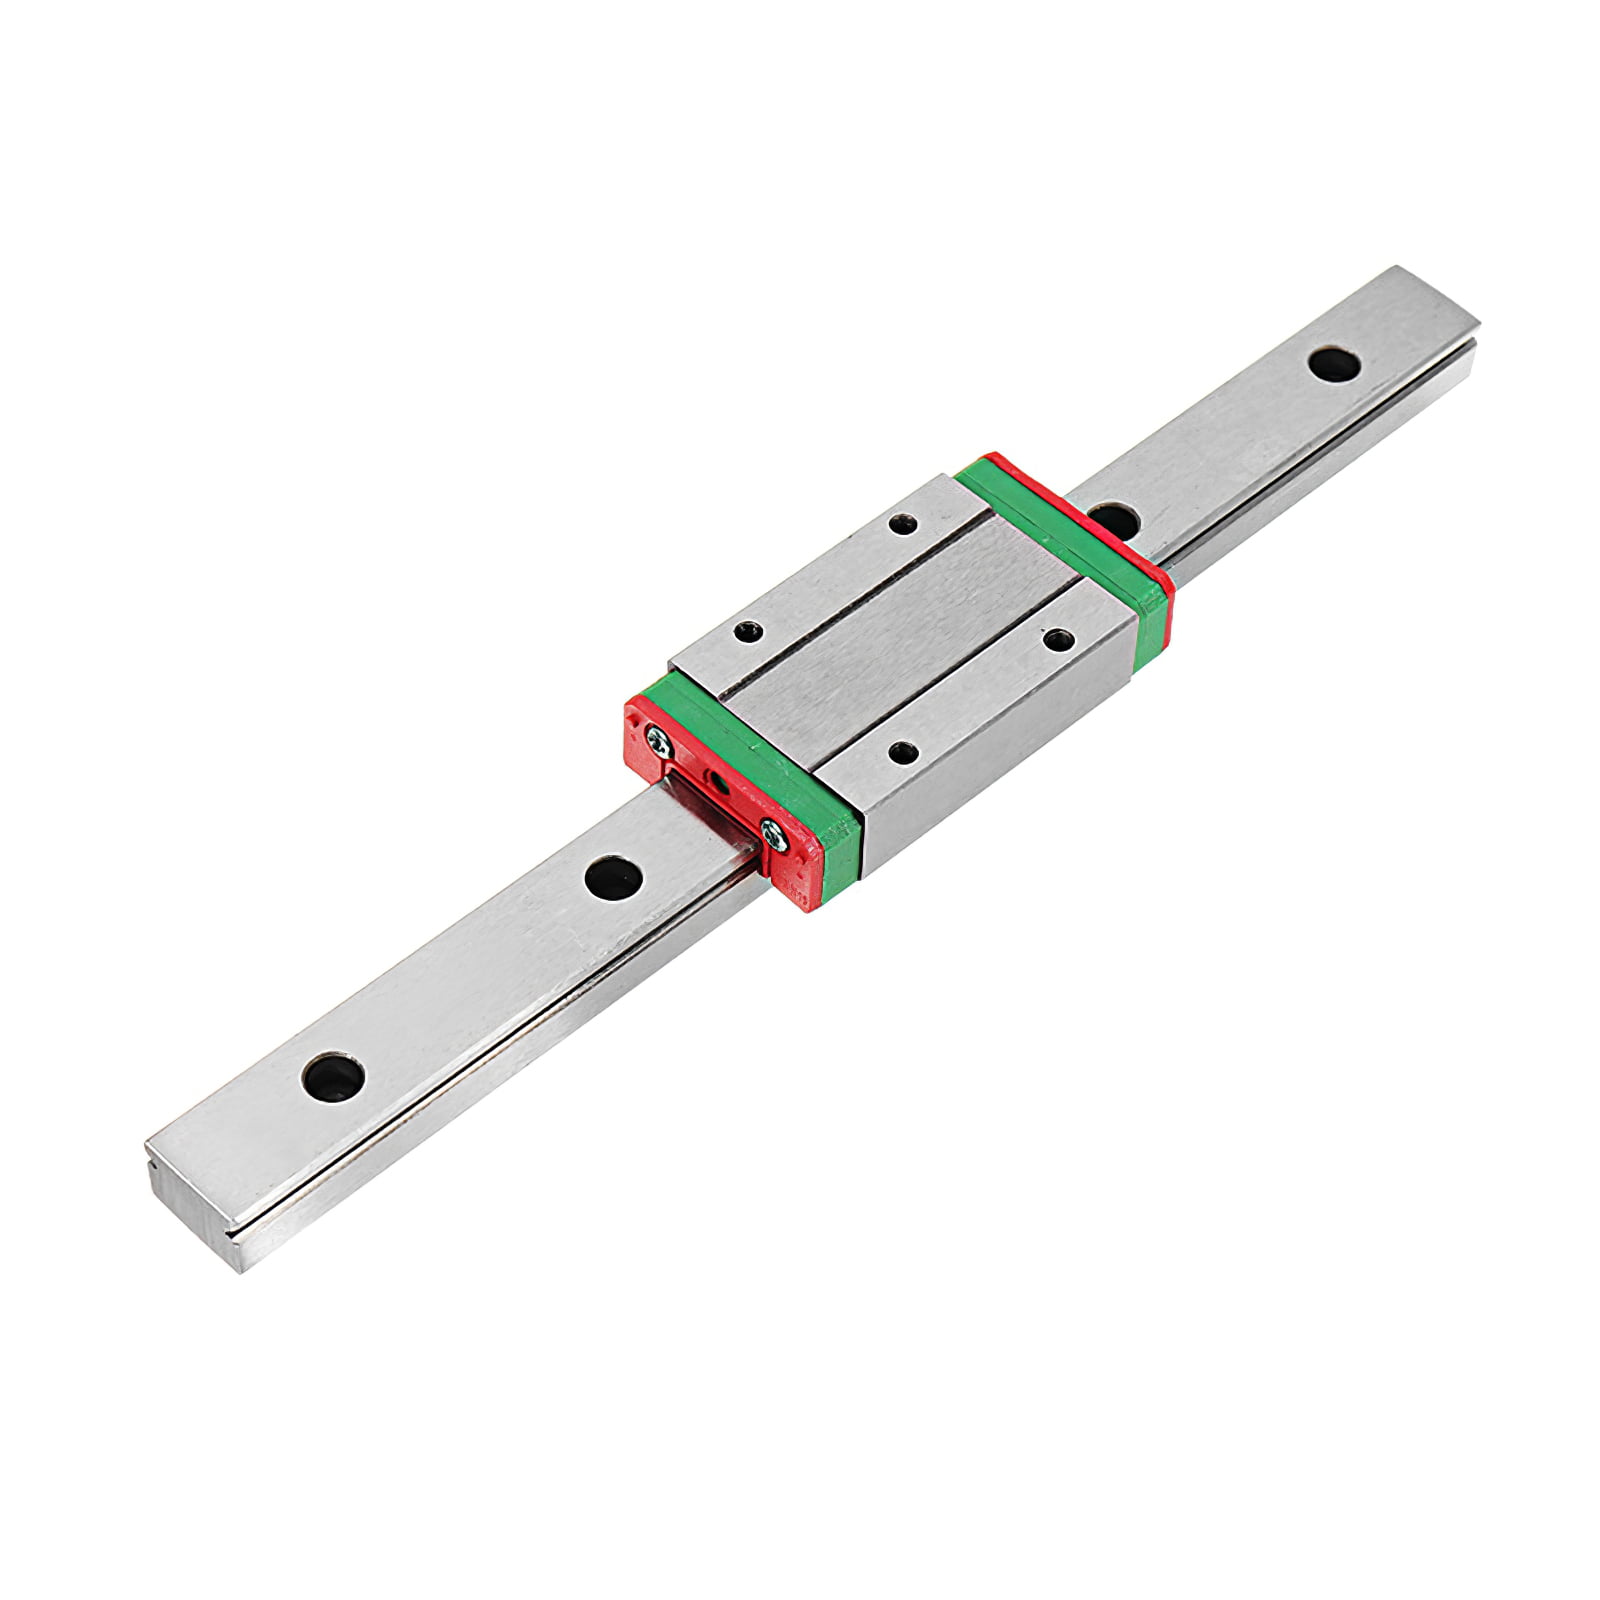 Mini MGN15H Extension Guide Rail Sliding Block Linear Sliding Device 